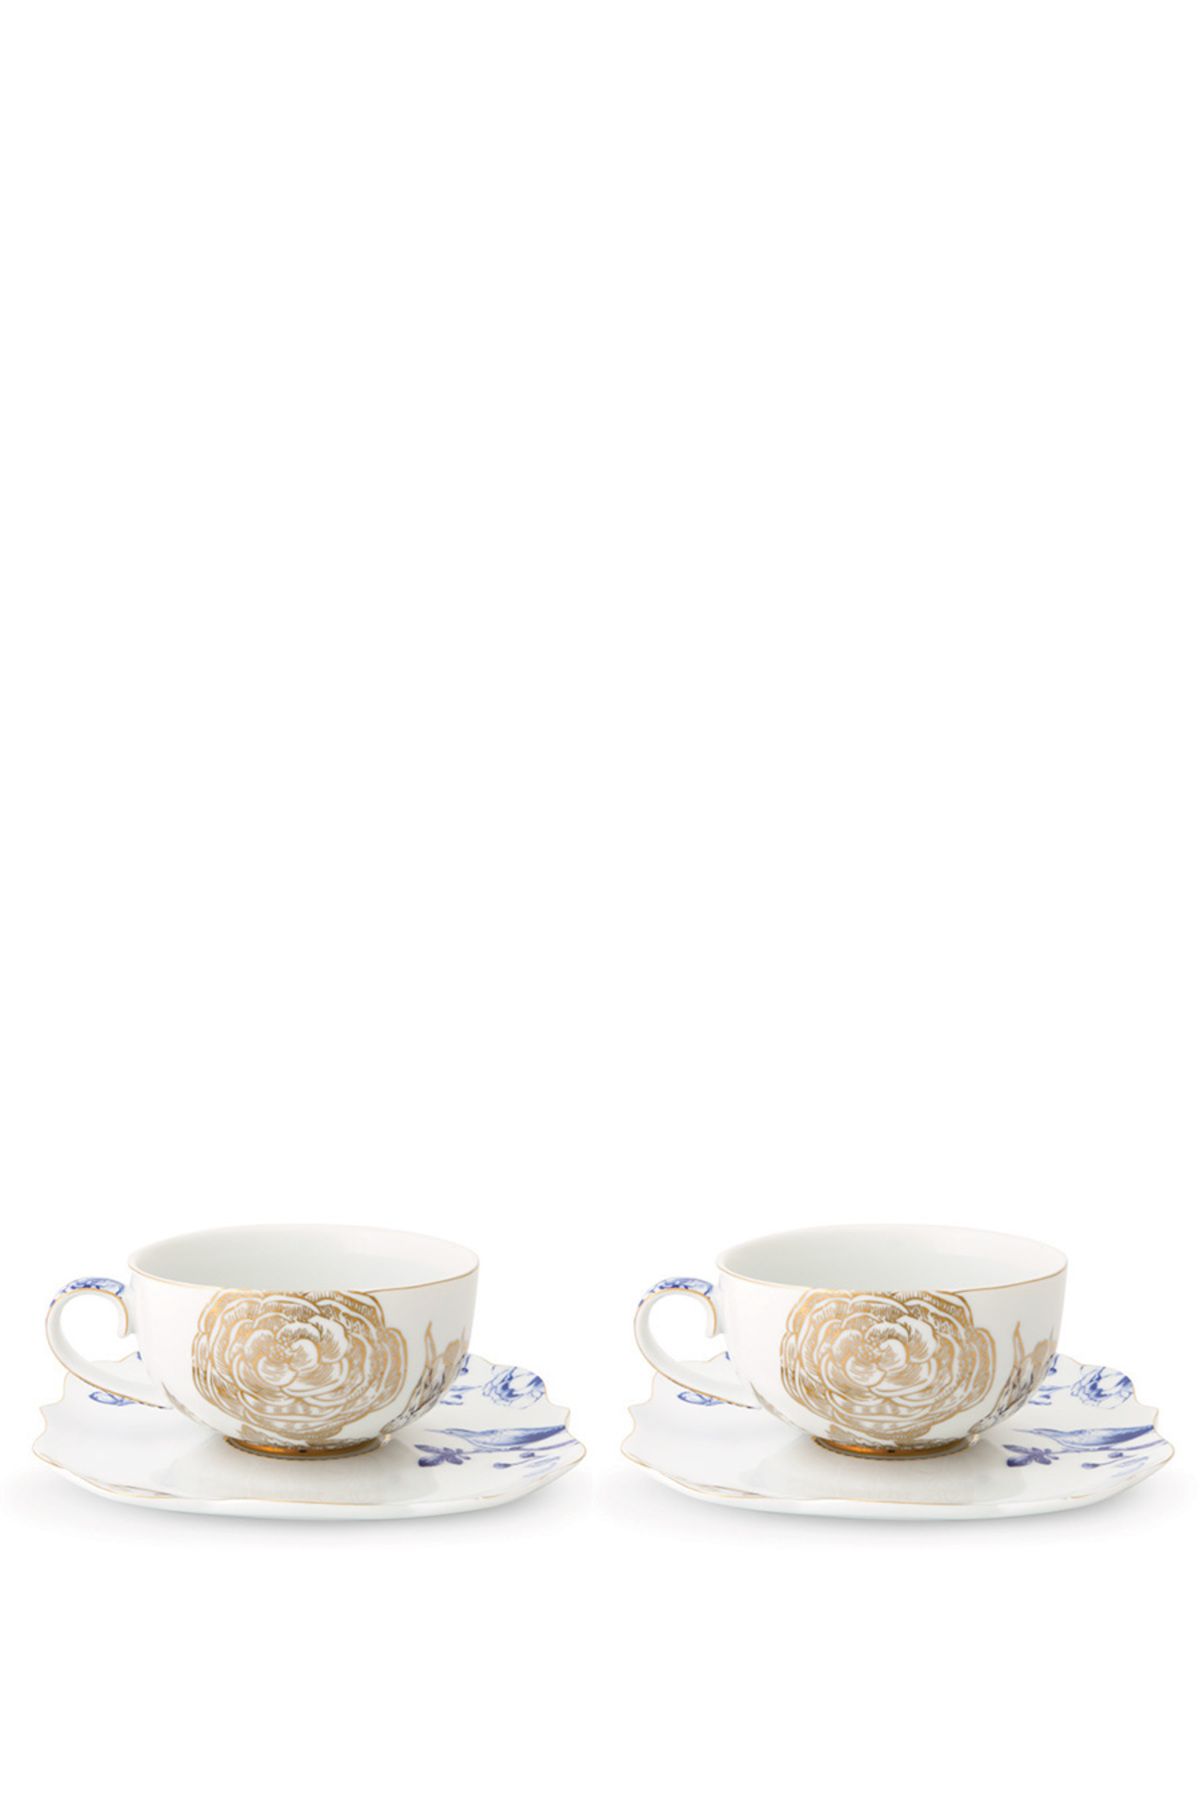 Pip Studio Royal Beyaz İkili Altın Çiçek Desenli Çay Fincanı